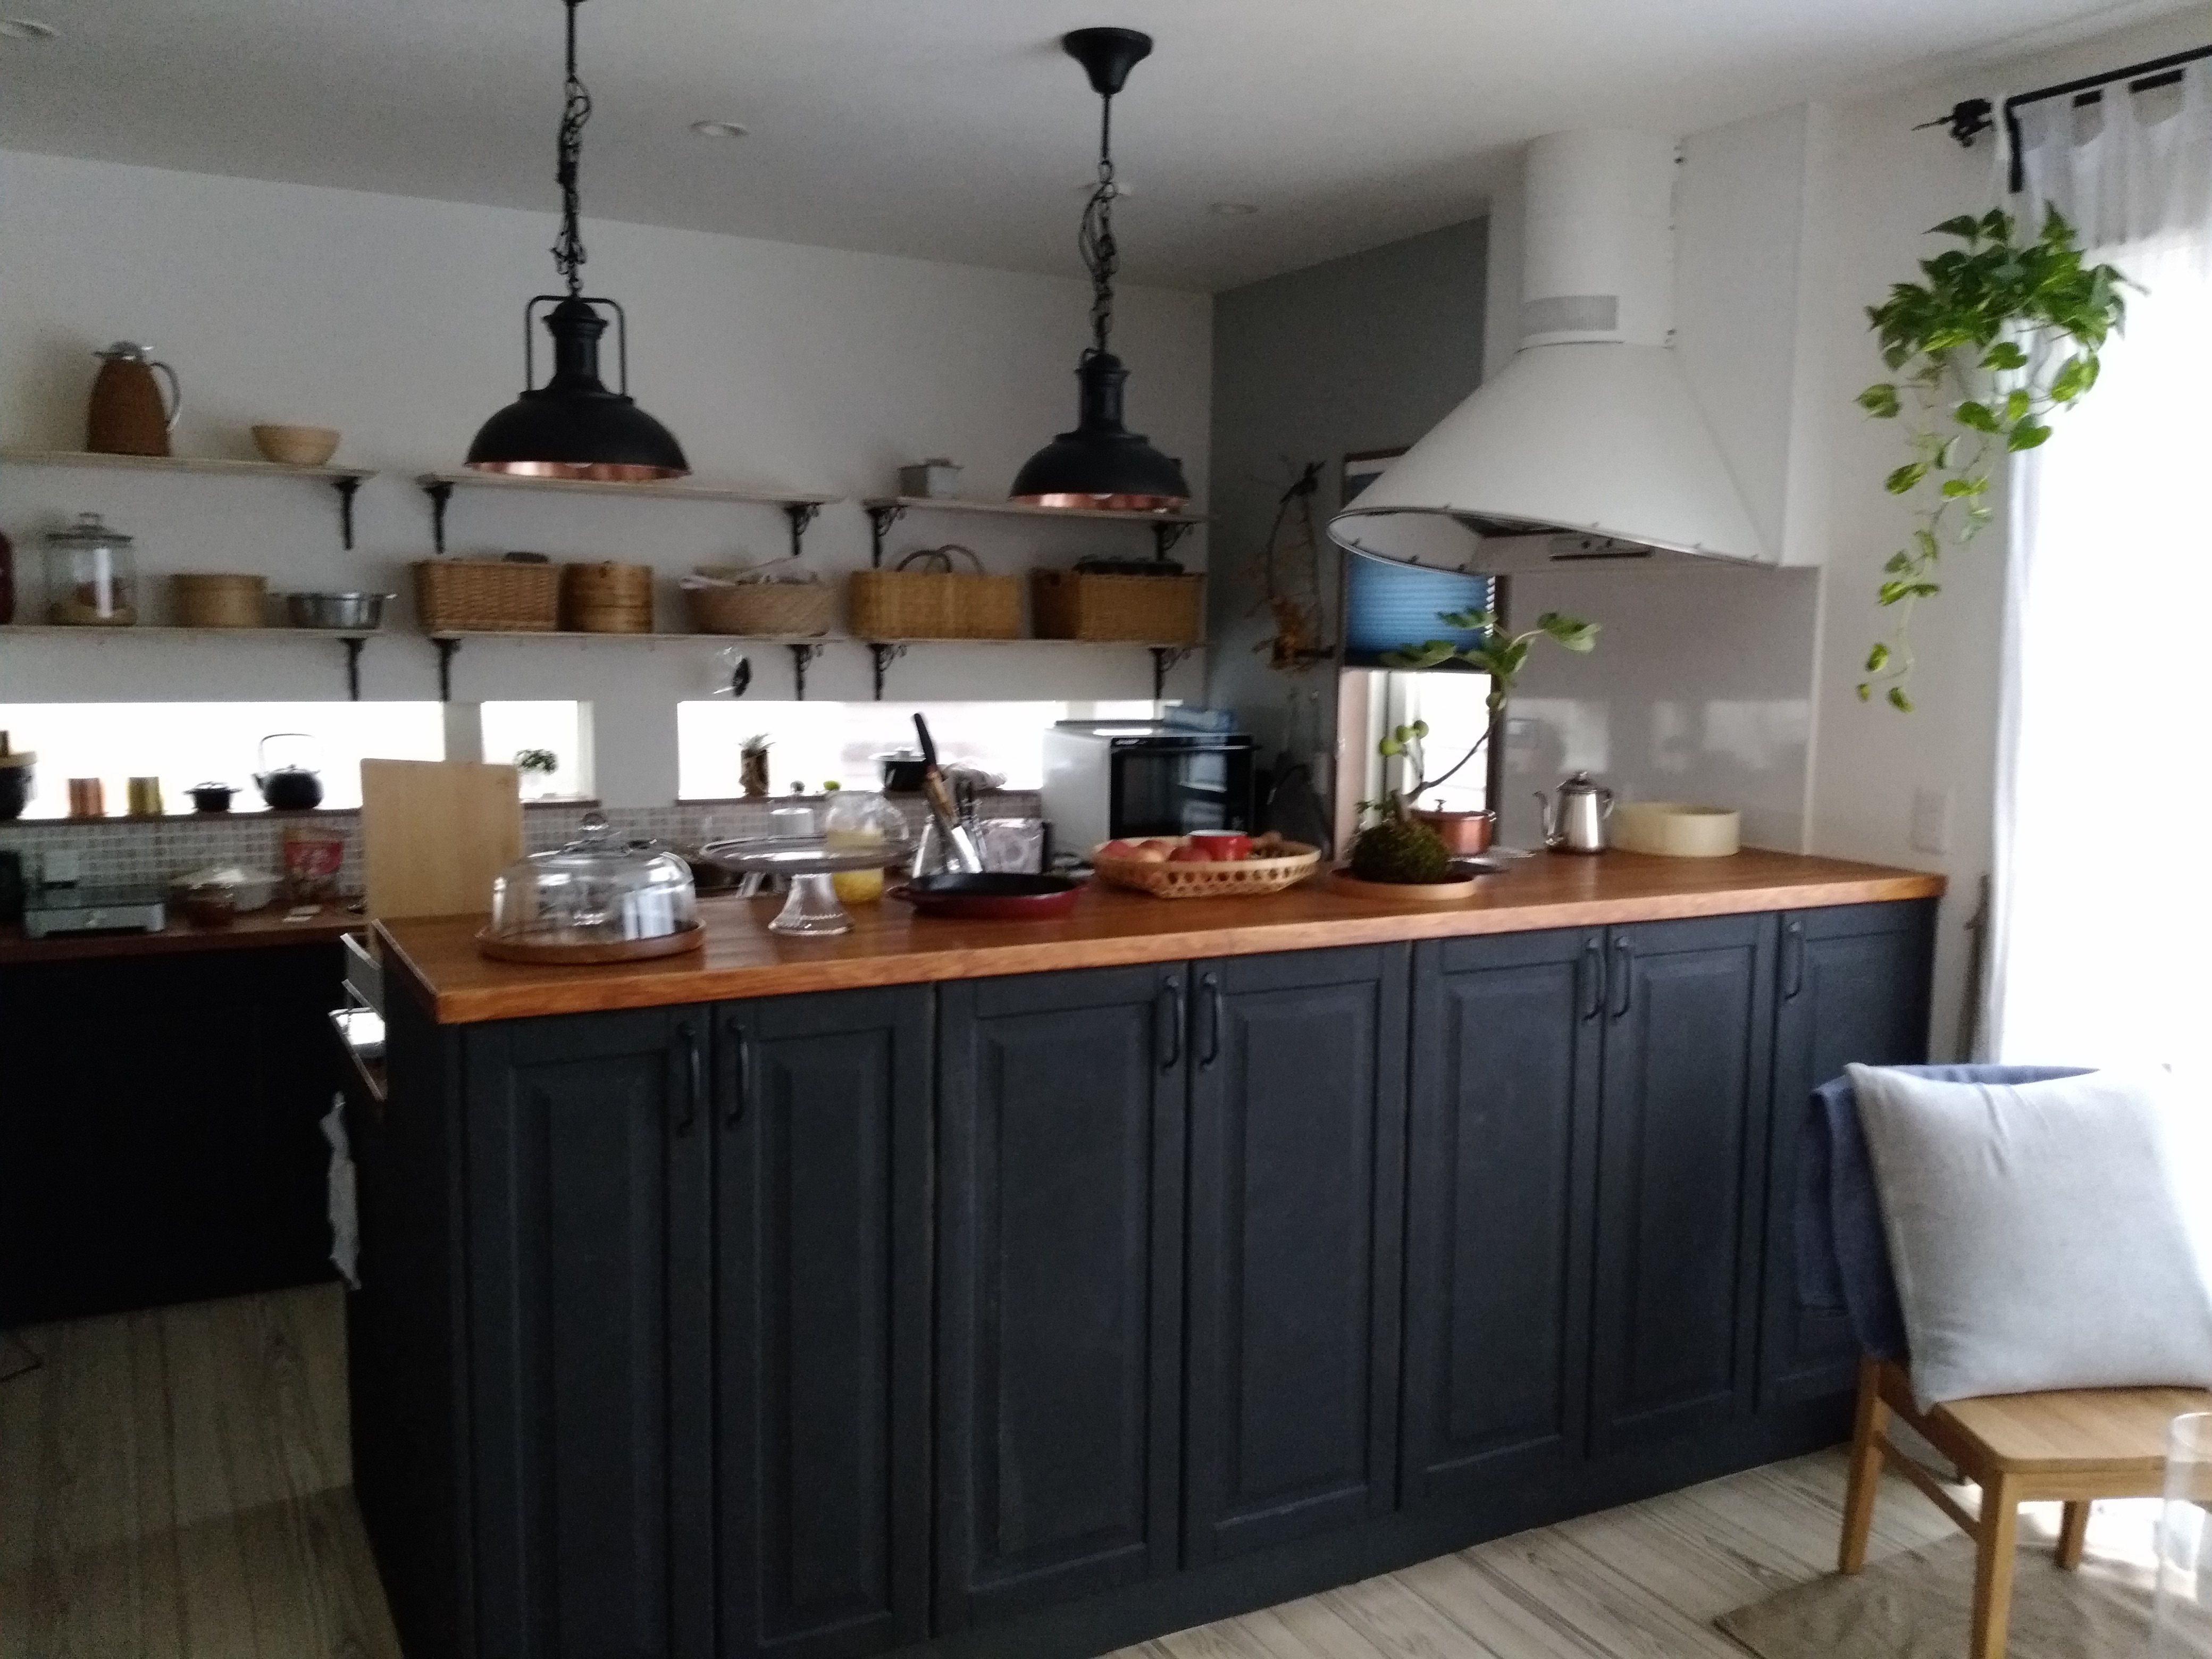 家族と一緒に塗り替えてきた完全オリジナルキッチン。kitchenarrangeさんのキッチンを探索！【IKEA（イケア）メトードキッチン ASKO 】  | ムクリ［mukuri］